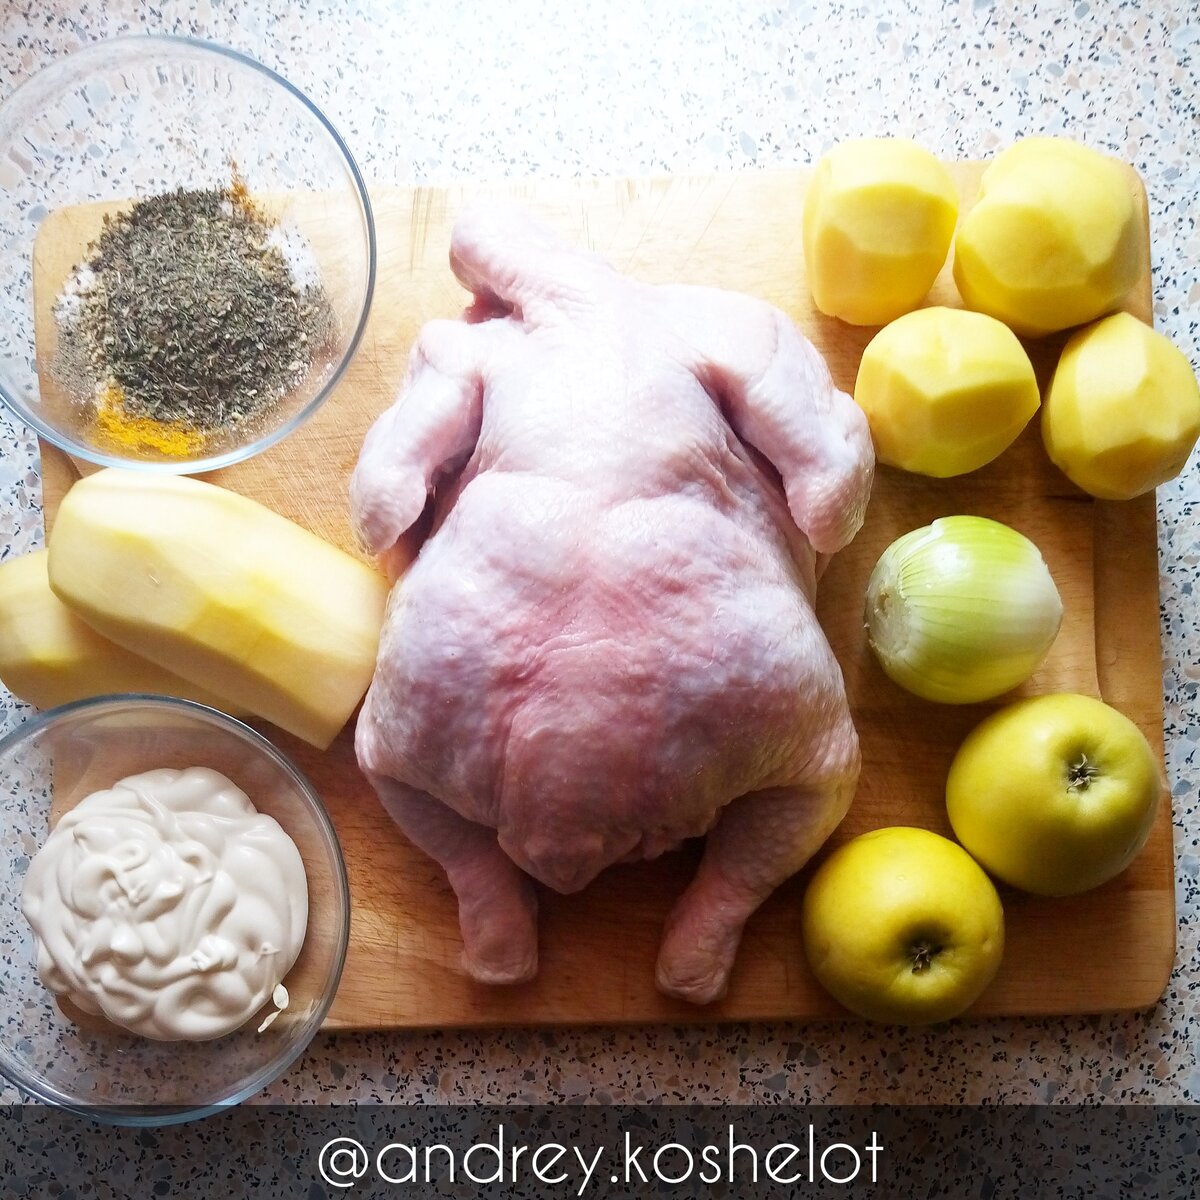 Как приготовить курицу в духовке целиком